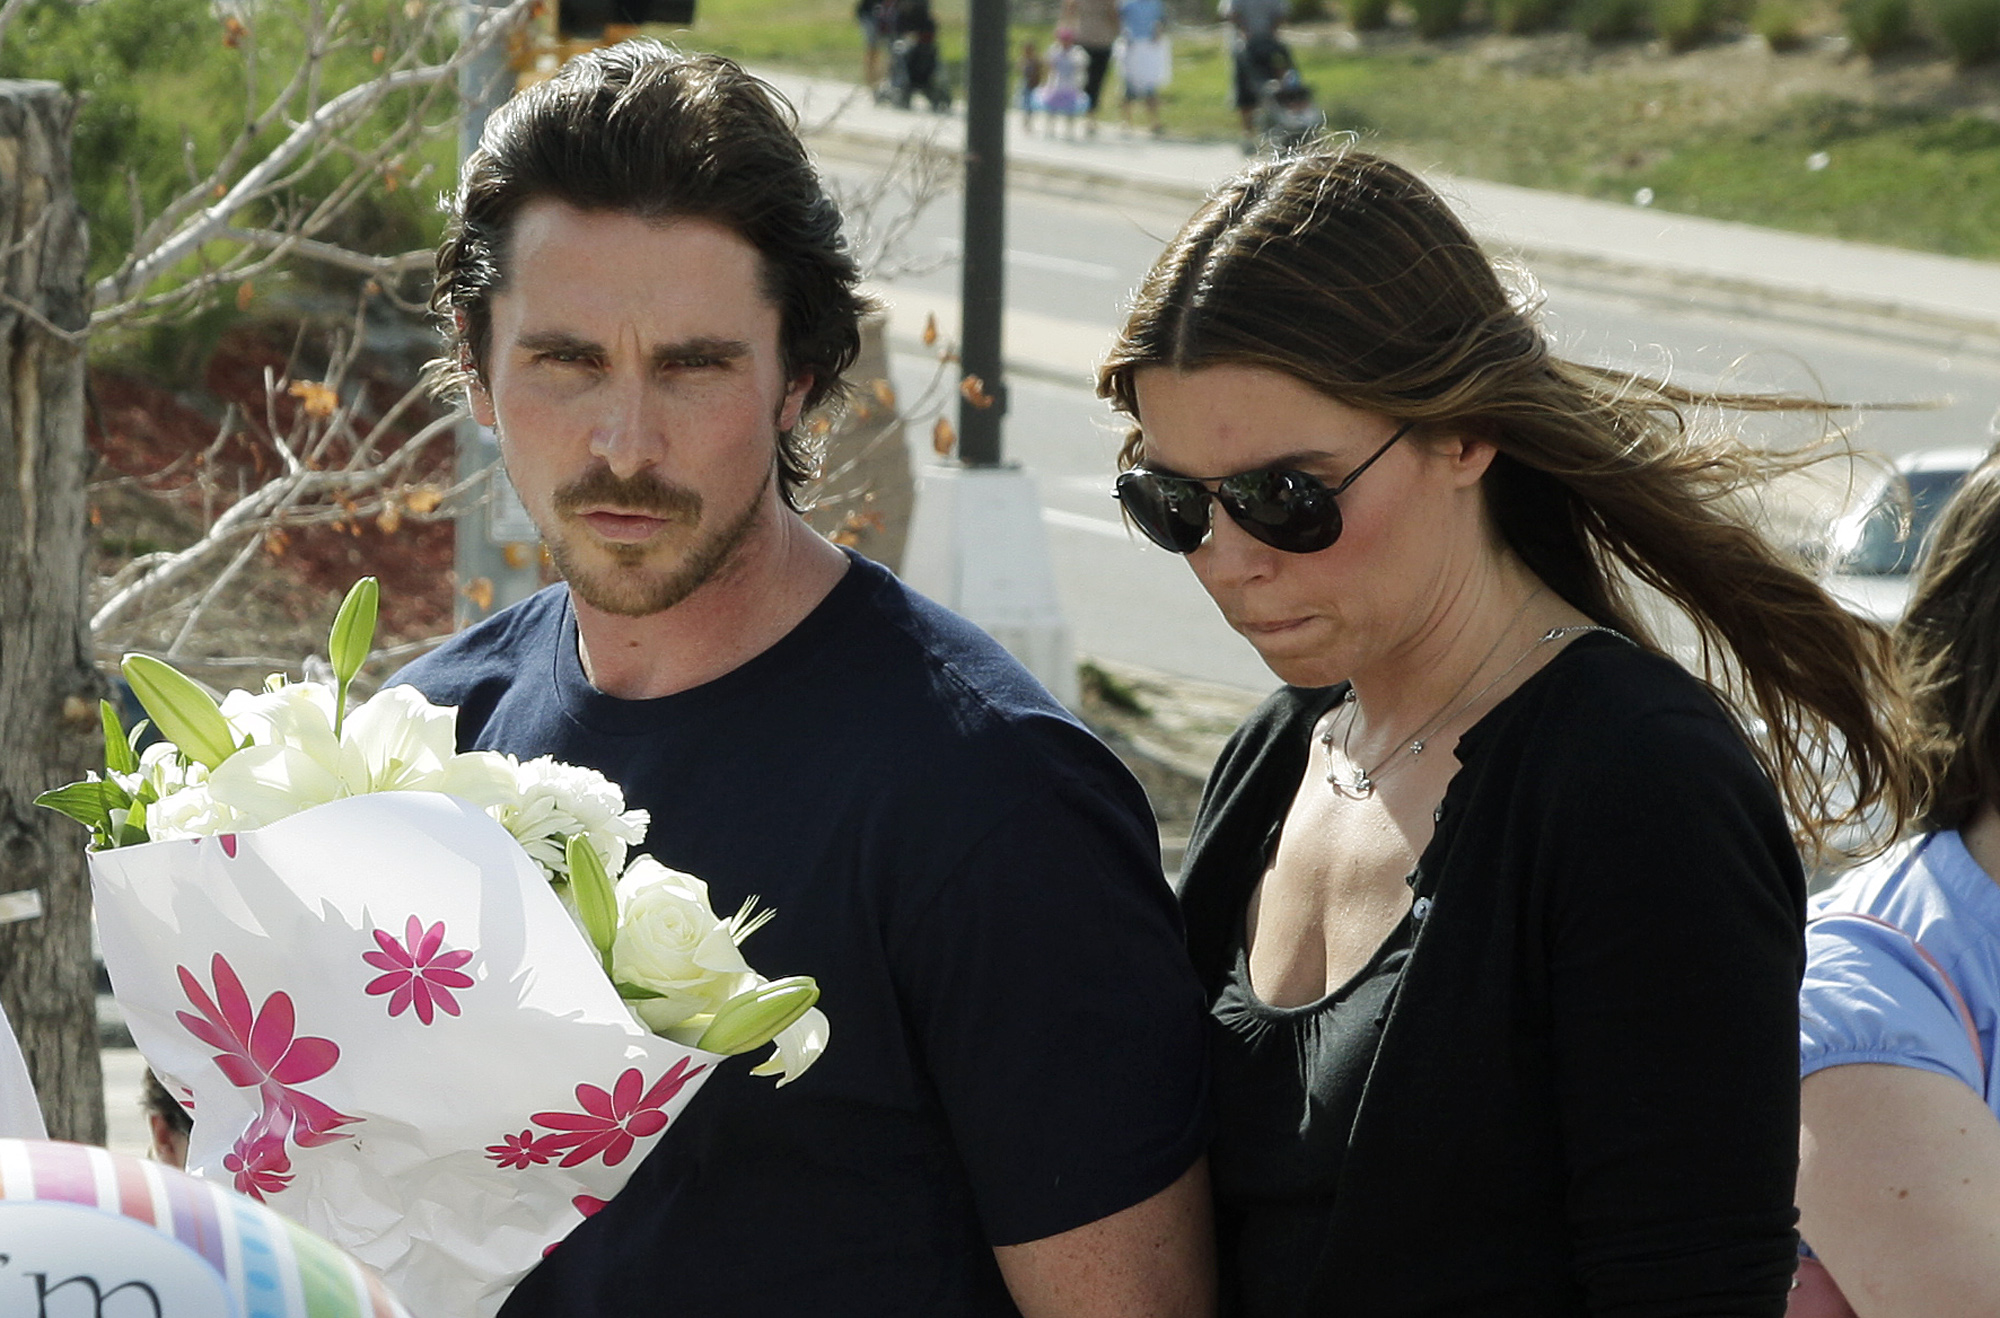 Christian Bale med fru besökte Aurora i veckan.